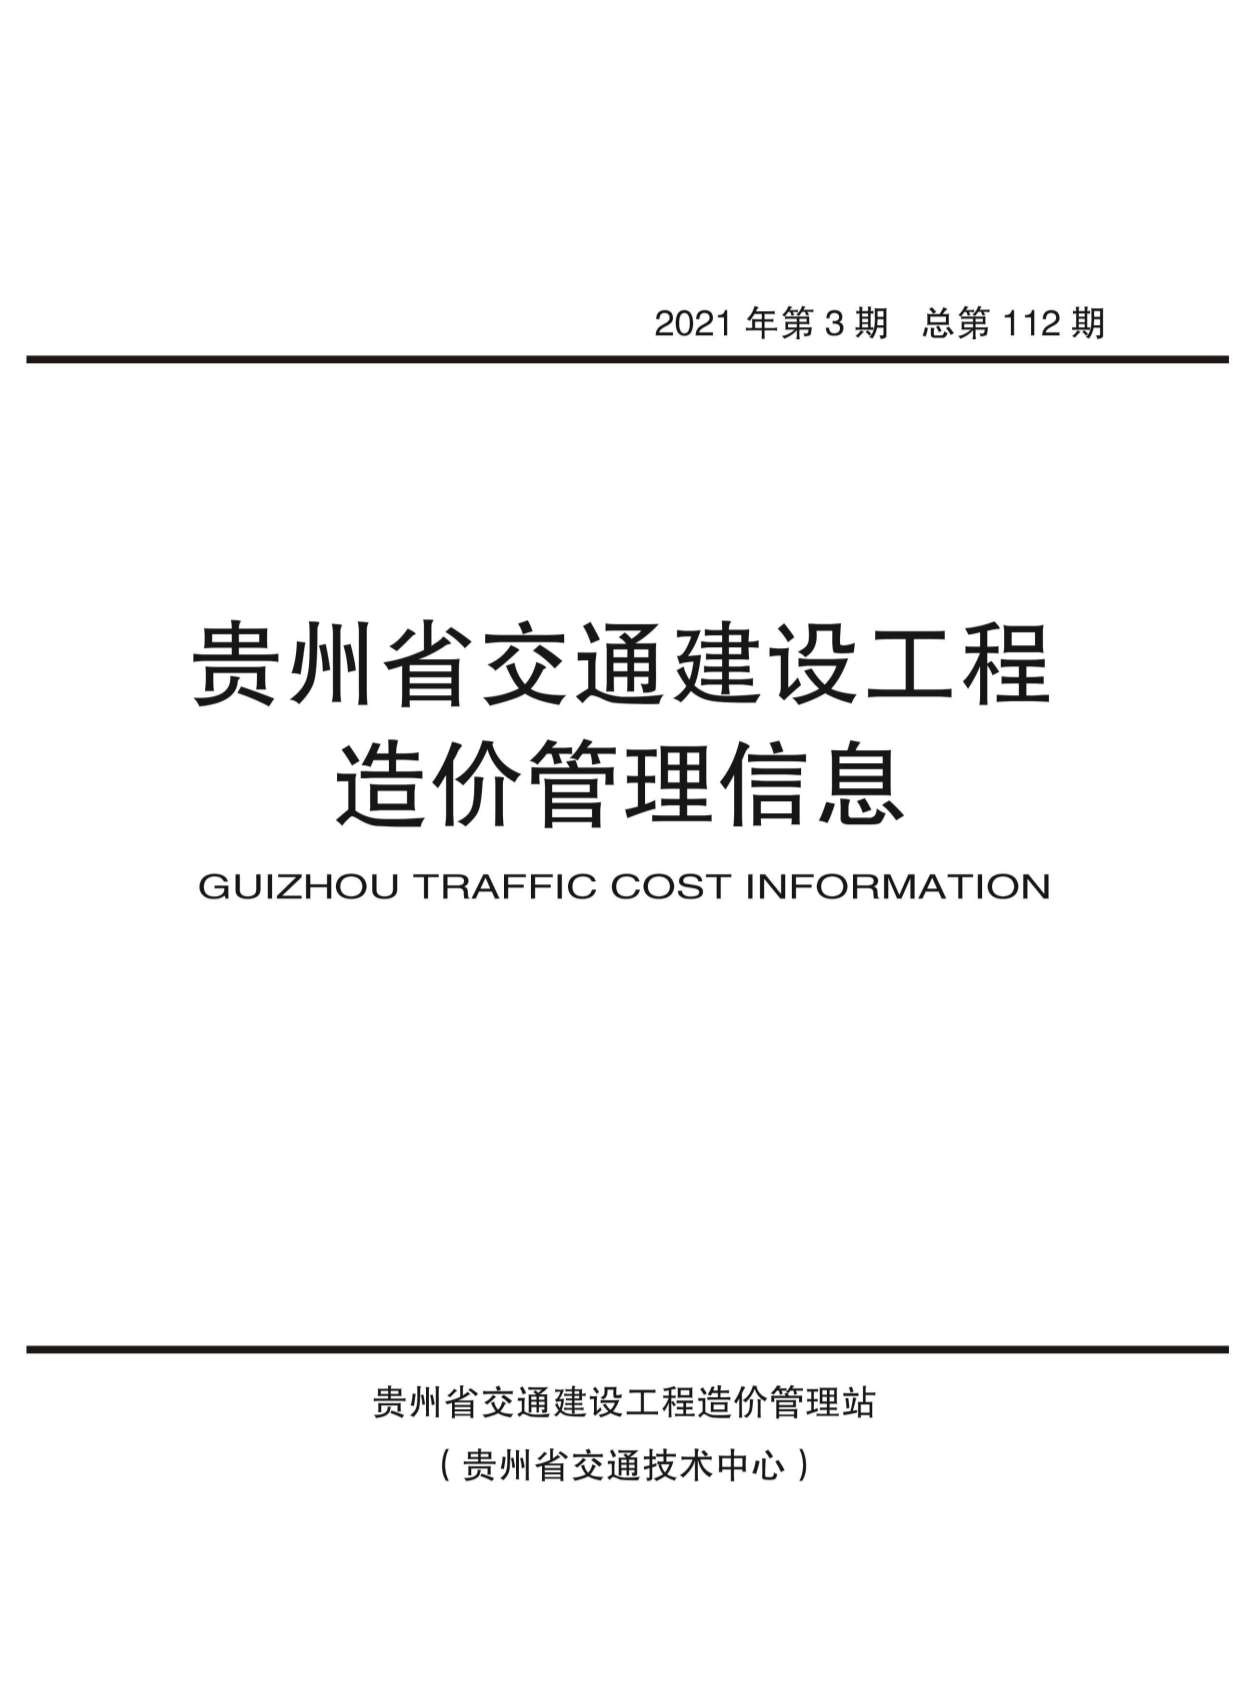 贵州省2021年3月交通工程信息价